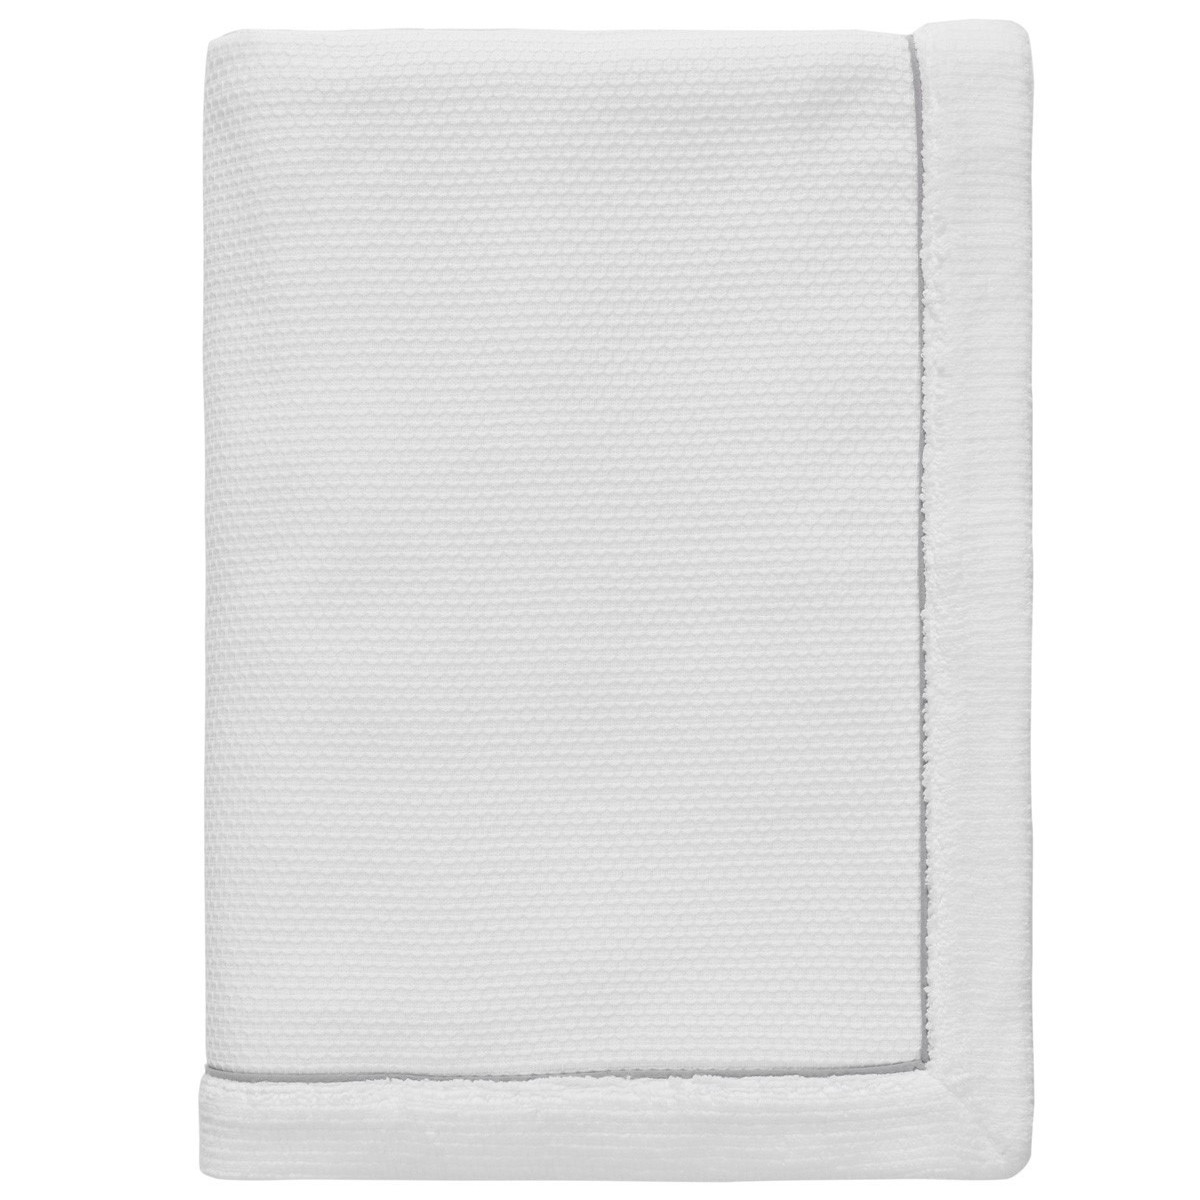 maxi drap de bain double face  blanc  100x180 cm